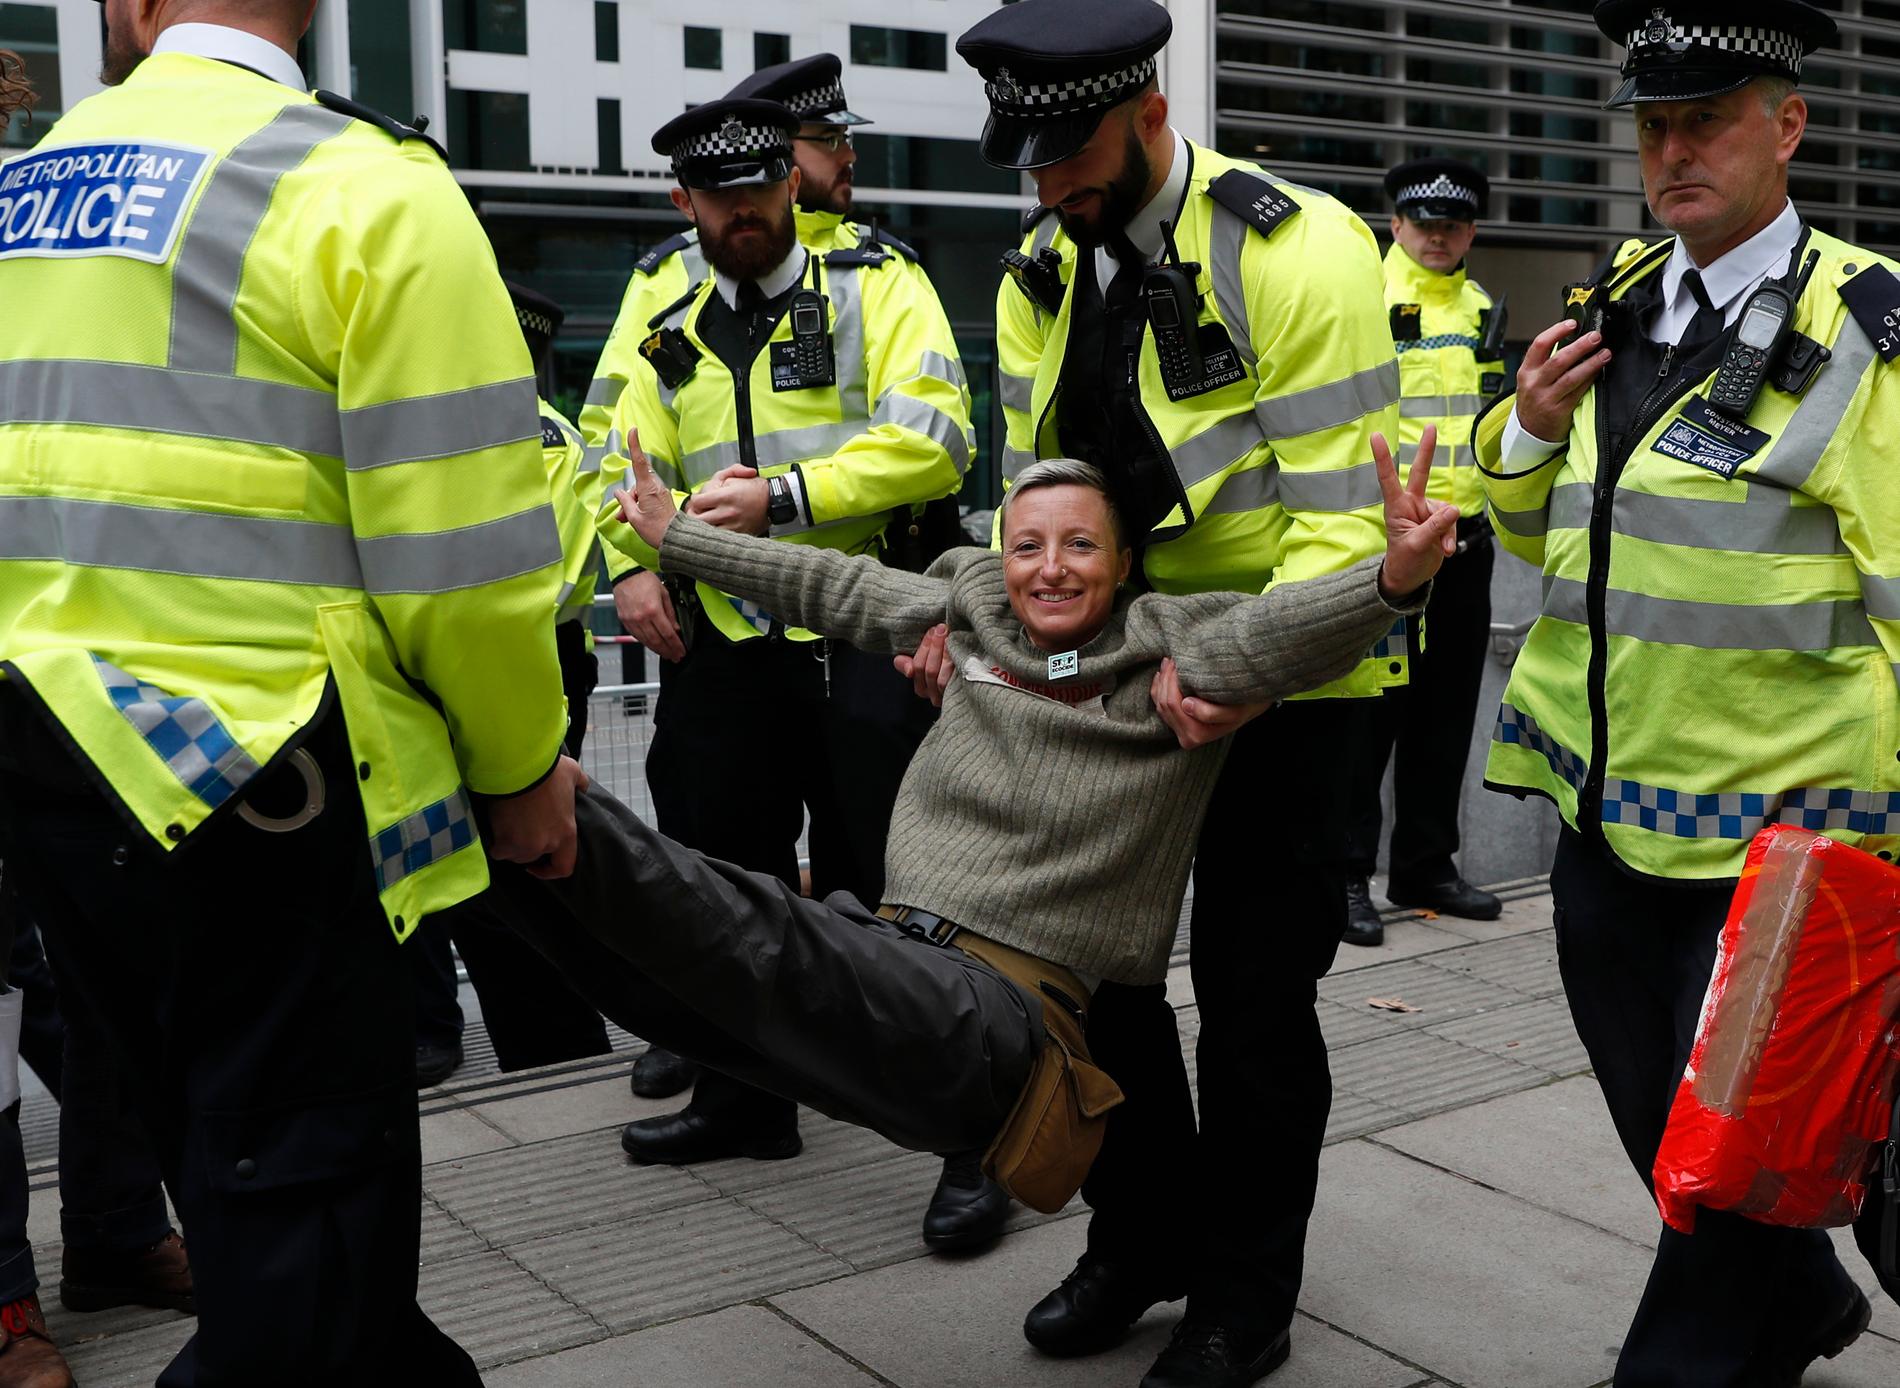 En klimataktivist grips och bärs bort av polis i London. Aktivisterna från nätverket Extinction Rebellion använder fredlig civil olydnad och ockuperar bland annat gator och broar för att få makthavare att agera mot massutrotningen av djur och natur. Bilden är från den 8 oktober.